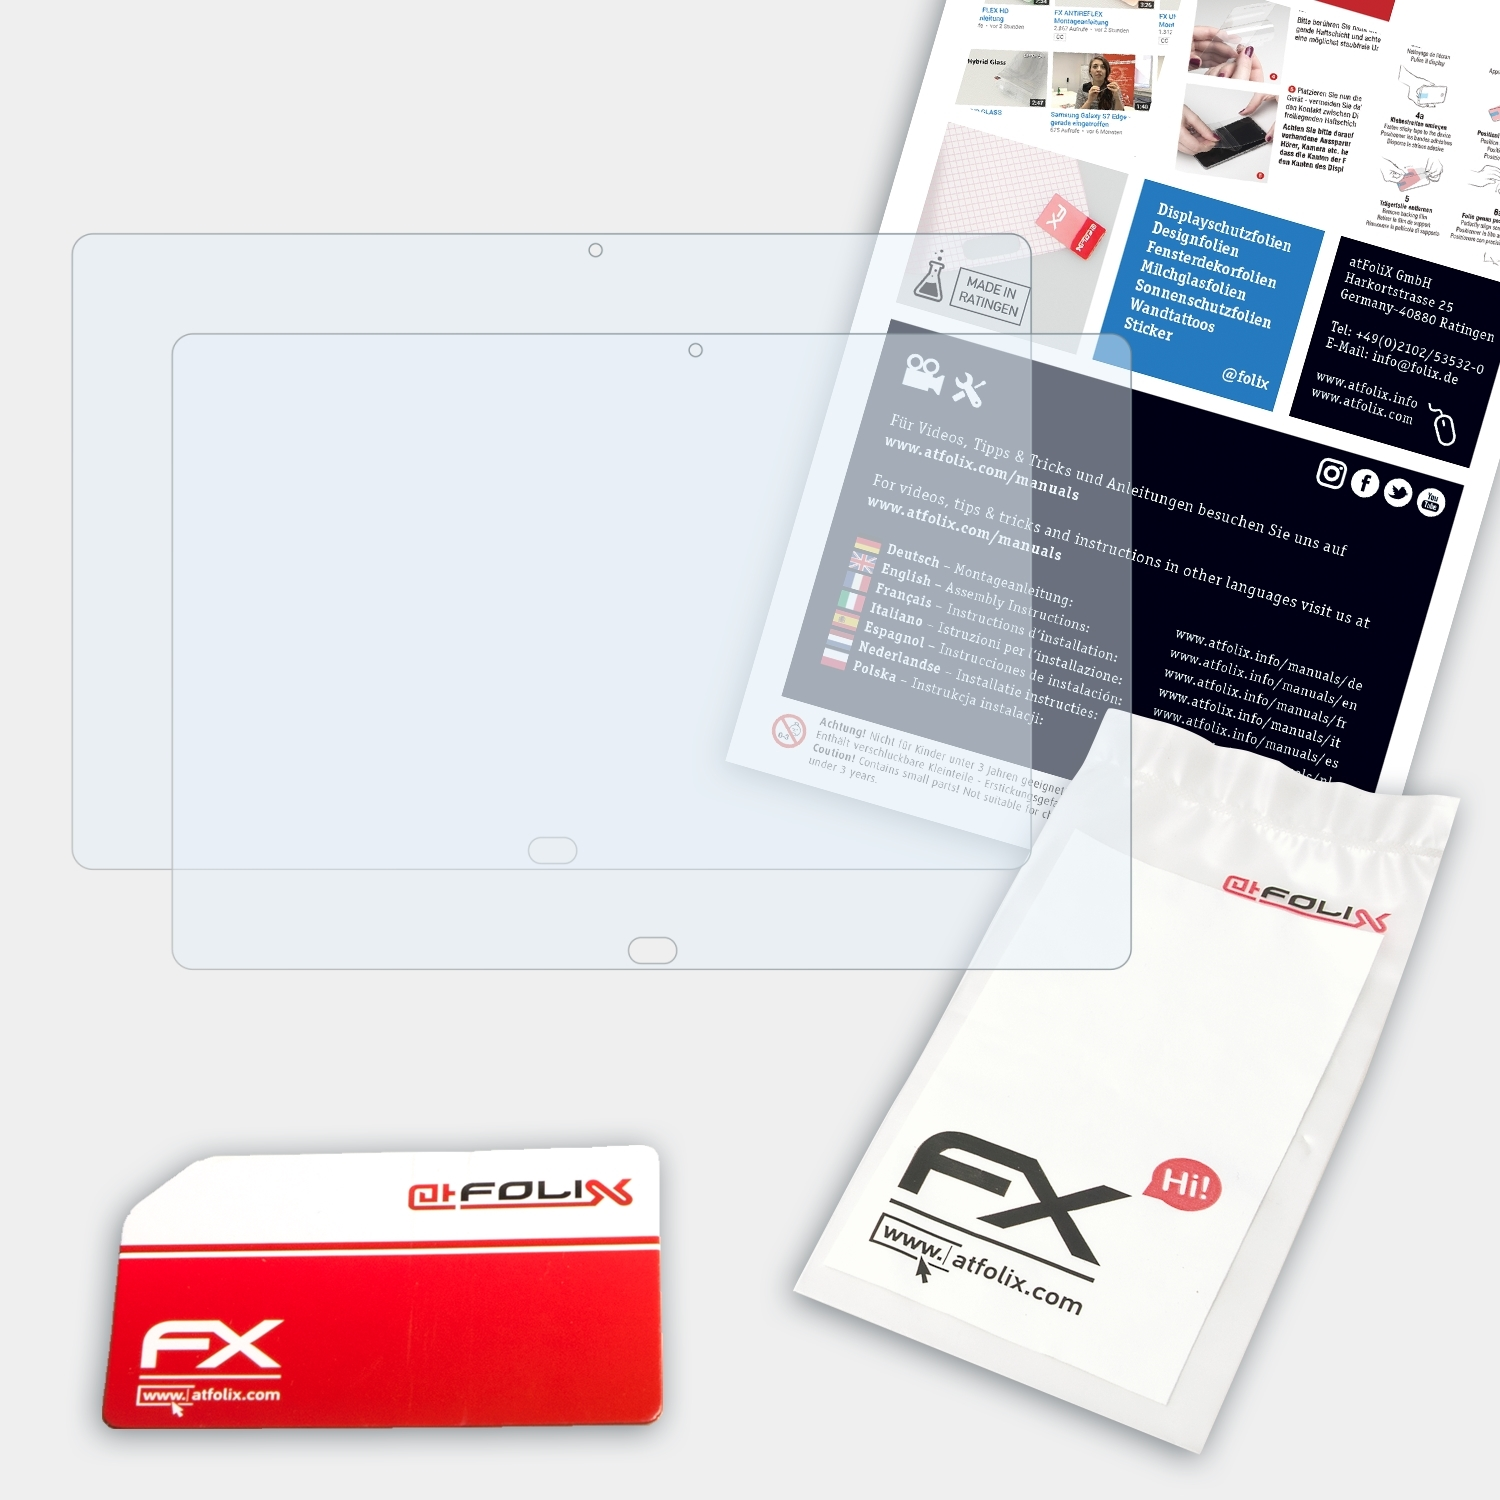 ATFOLIX 2x FX-Clear Displayschutz(für Chuwi CoreBook)